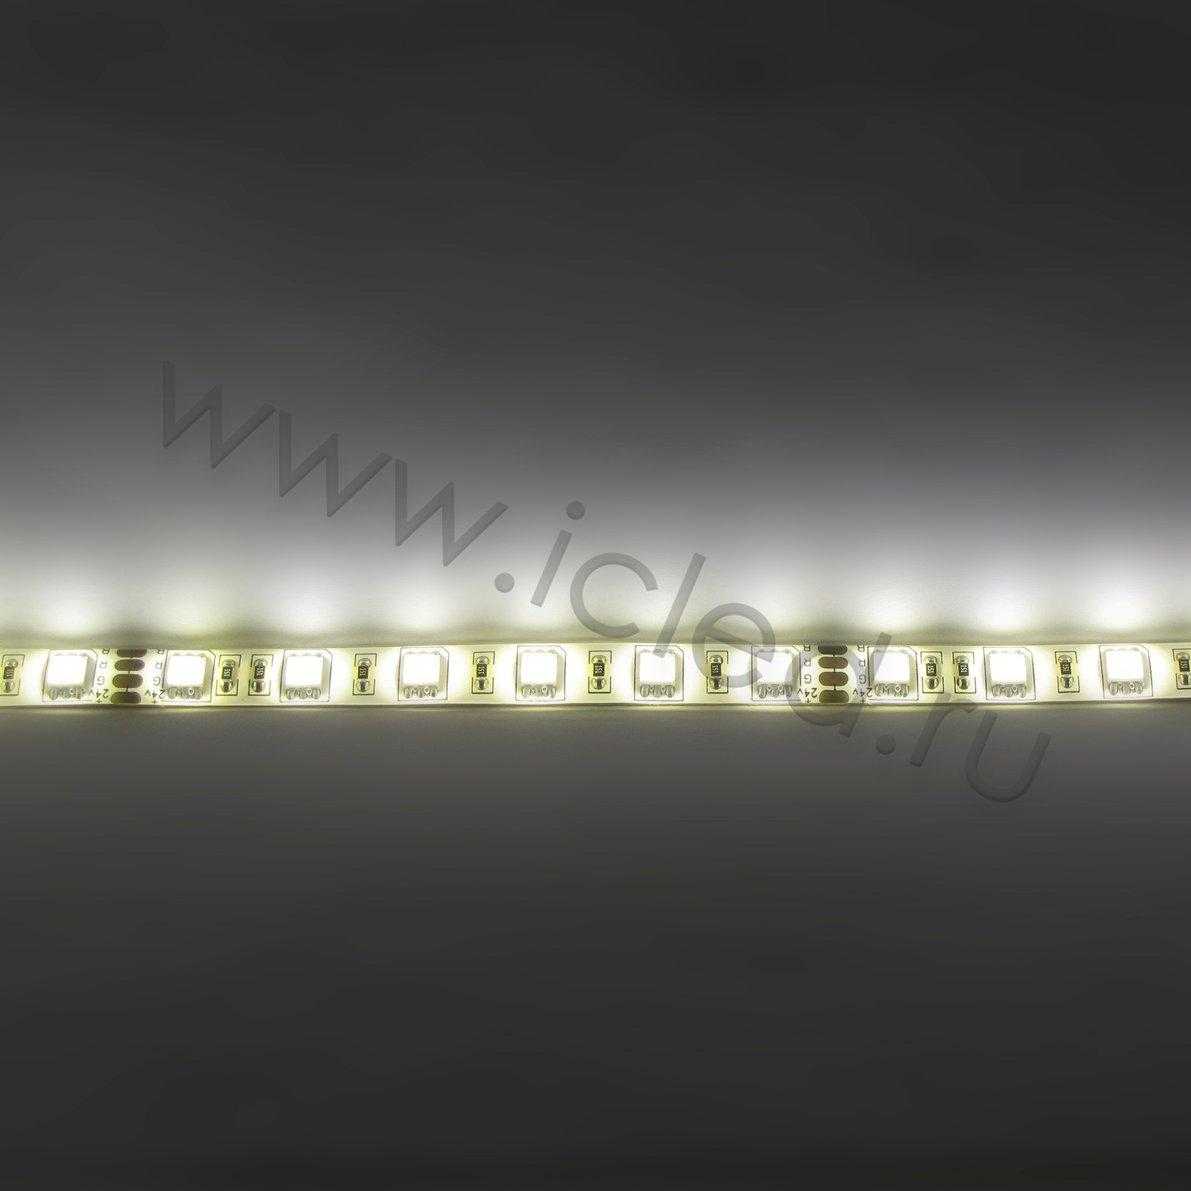 Влагозащищенные светодиодные ленты Светодиодная лента Standart PRO class, 5050, 60led/m, Warm White, 24V, IP65 Icled